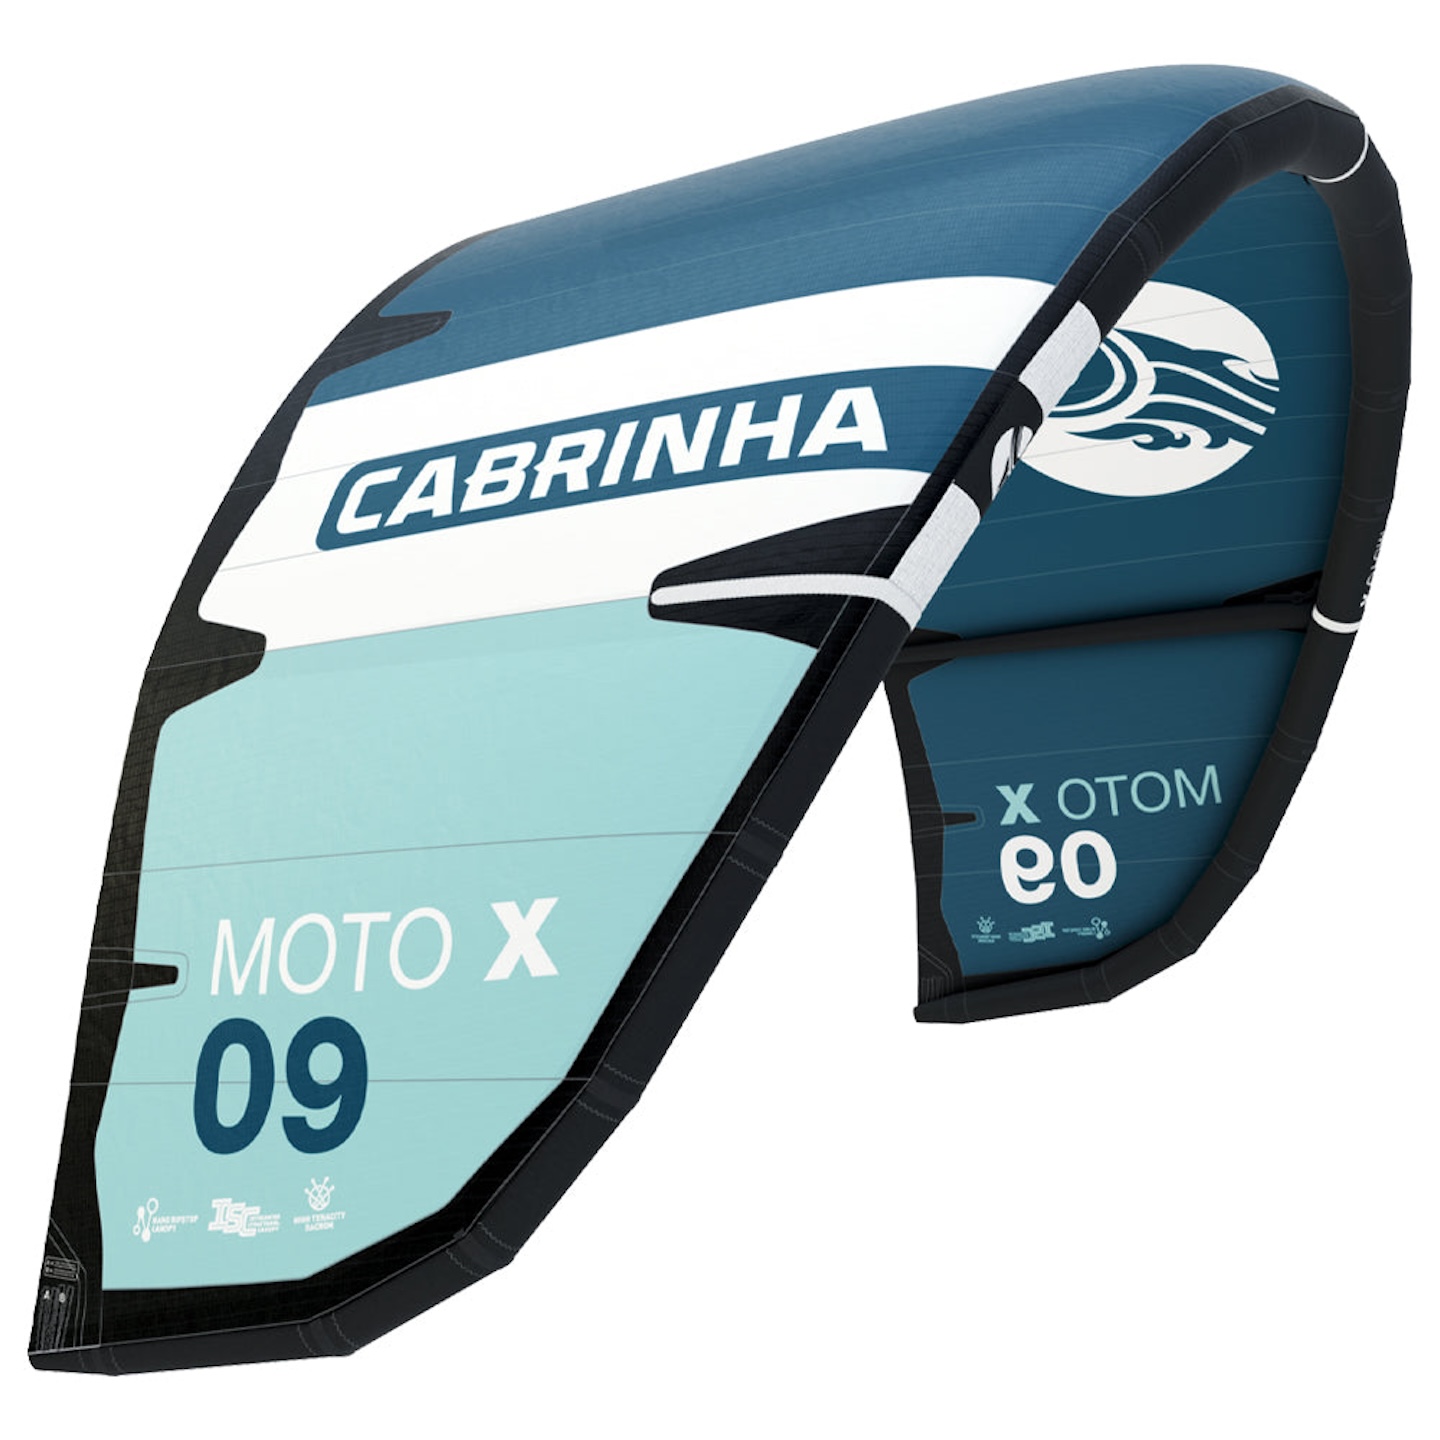 Cabrinha 04S Moto X Kite C3